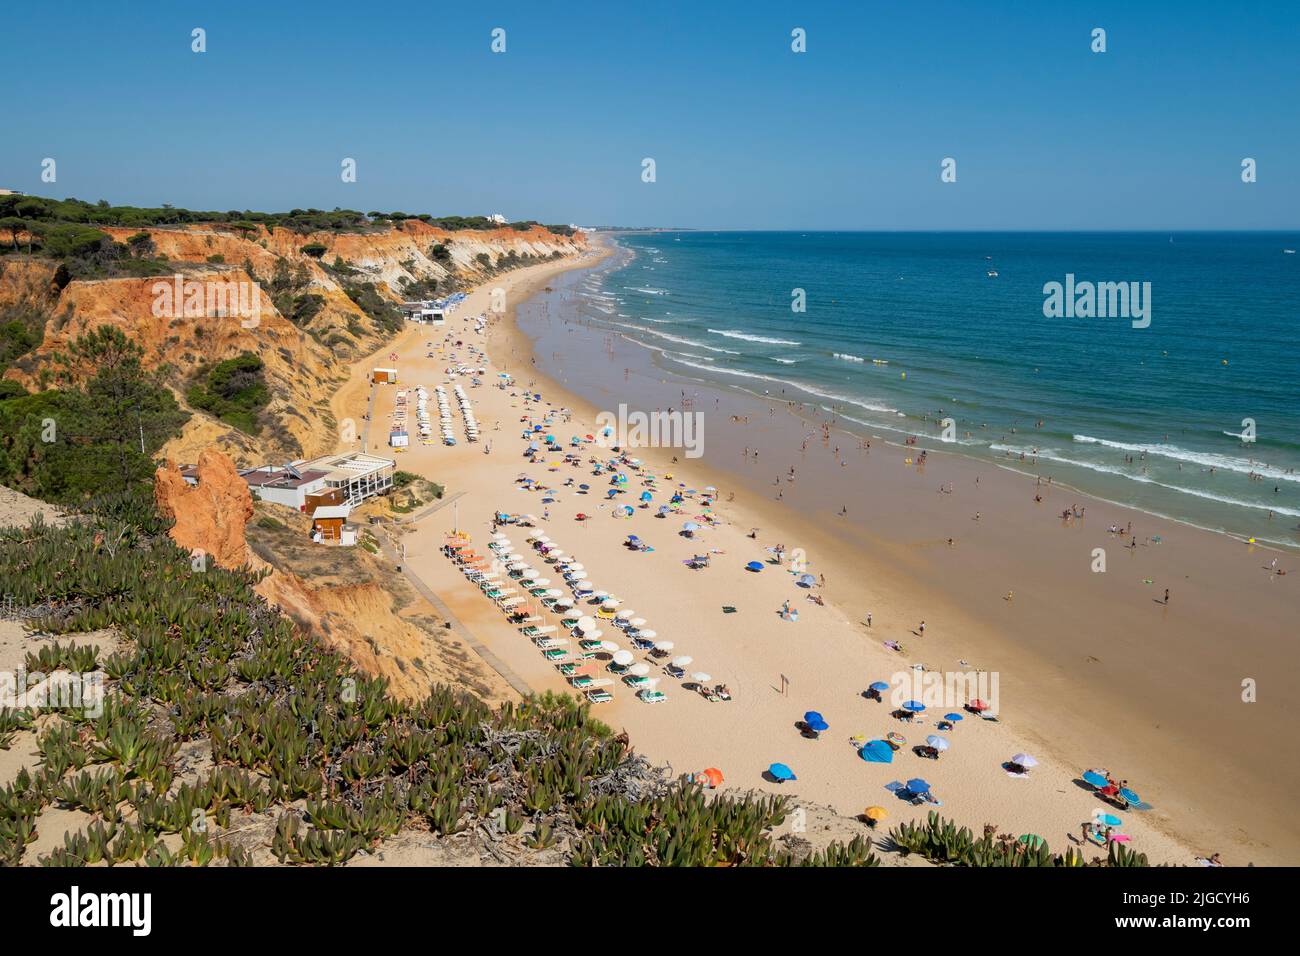 Portogallo, Algarve, falesia spiaggia ' praia da falésia '. Turismo del Portogallo del Sud con belle spiagge e alberghi. Estate spiaggia tempo in Algarve. Europeo Foto Stock